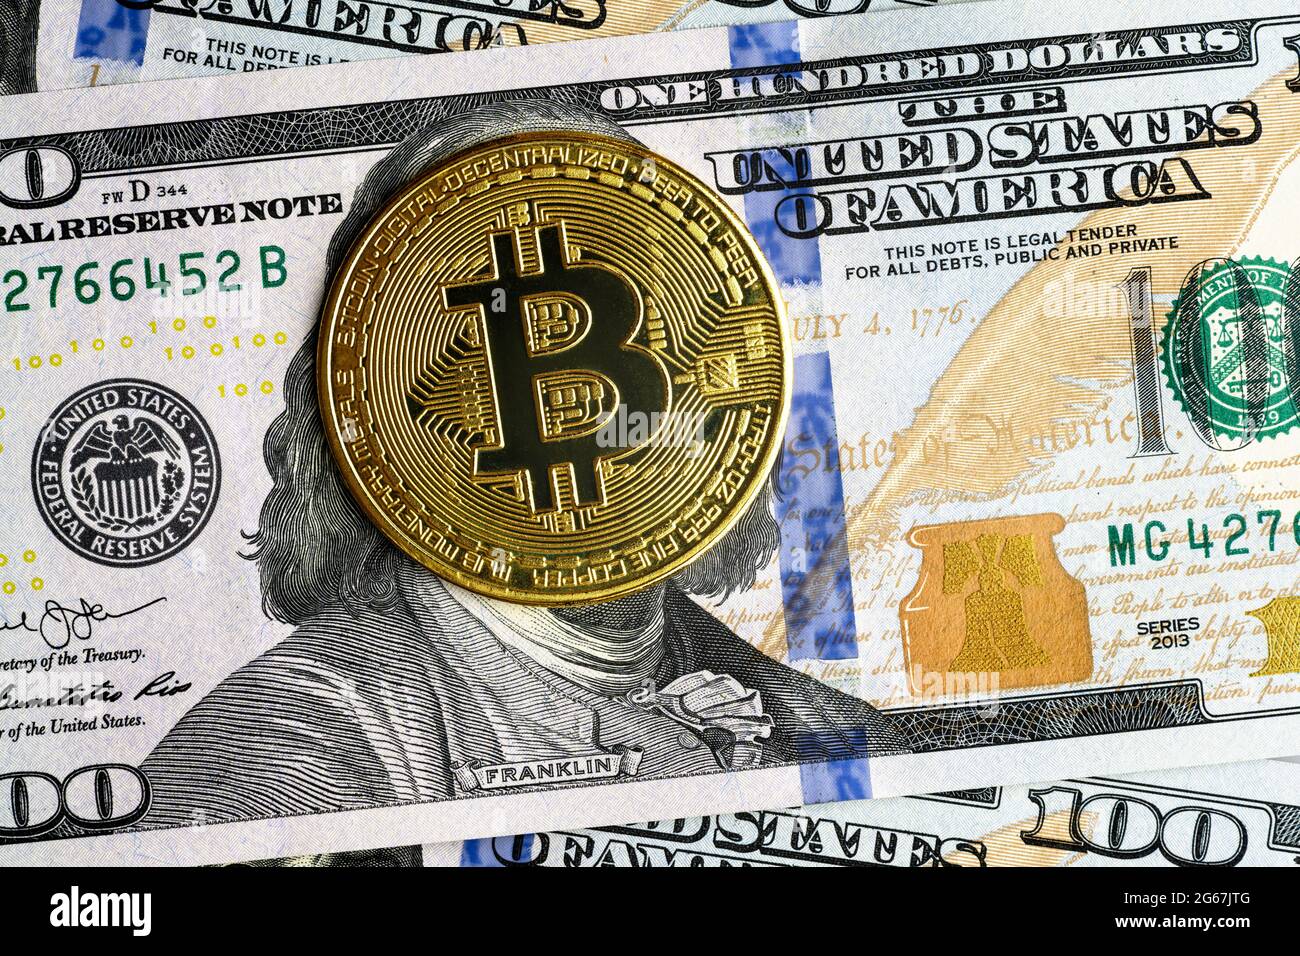 Bitcoin vs dollar américain, pièces de bits d'or sur une facture de 100 dollars. La crypto-monnaie numérique bitcoin masque Franklin face sur le billet d'argent. Concept de paiement bitcoin Banque D'Images